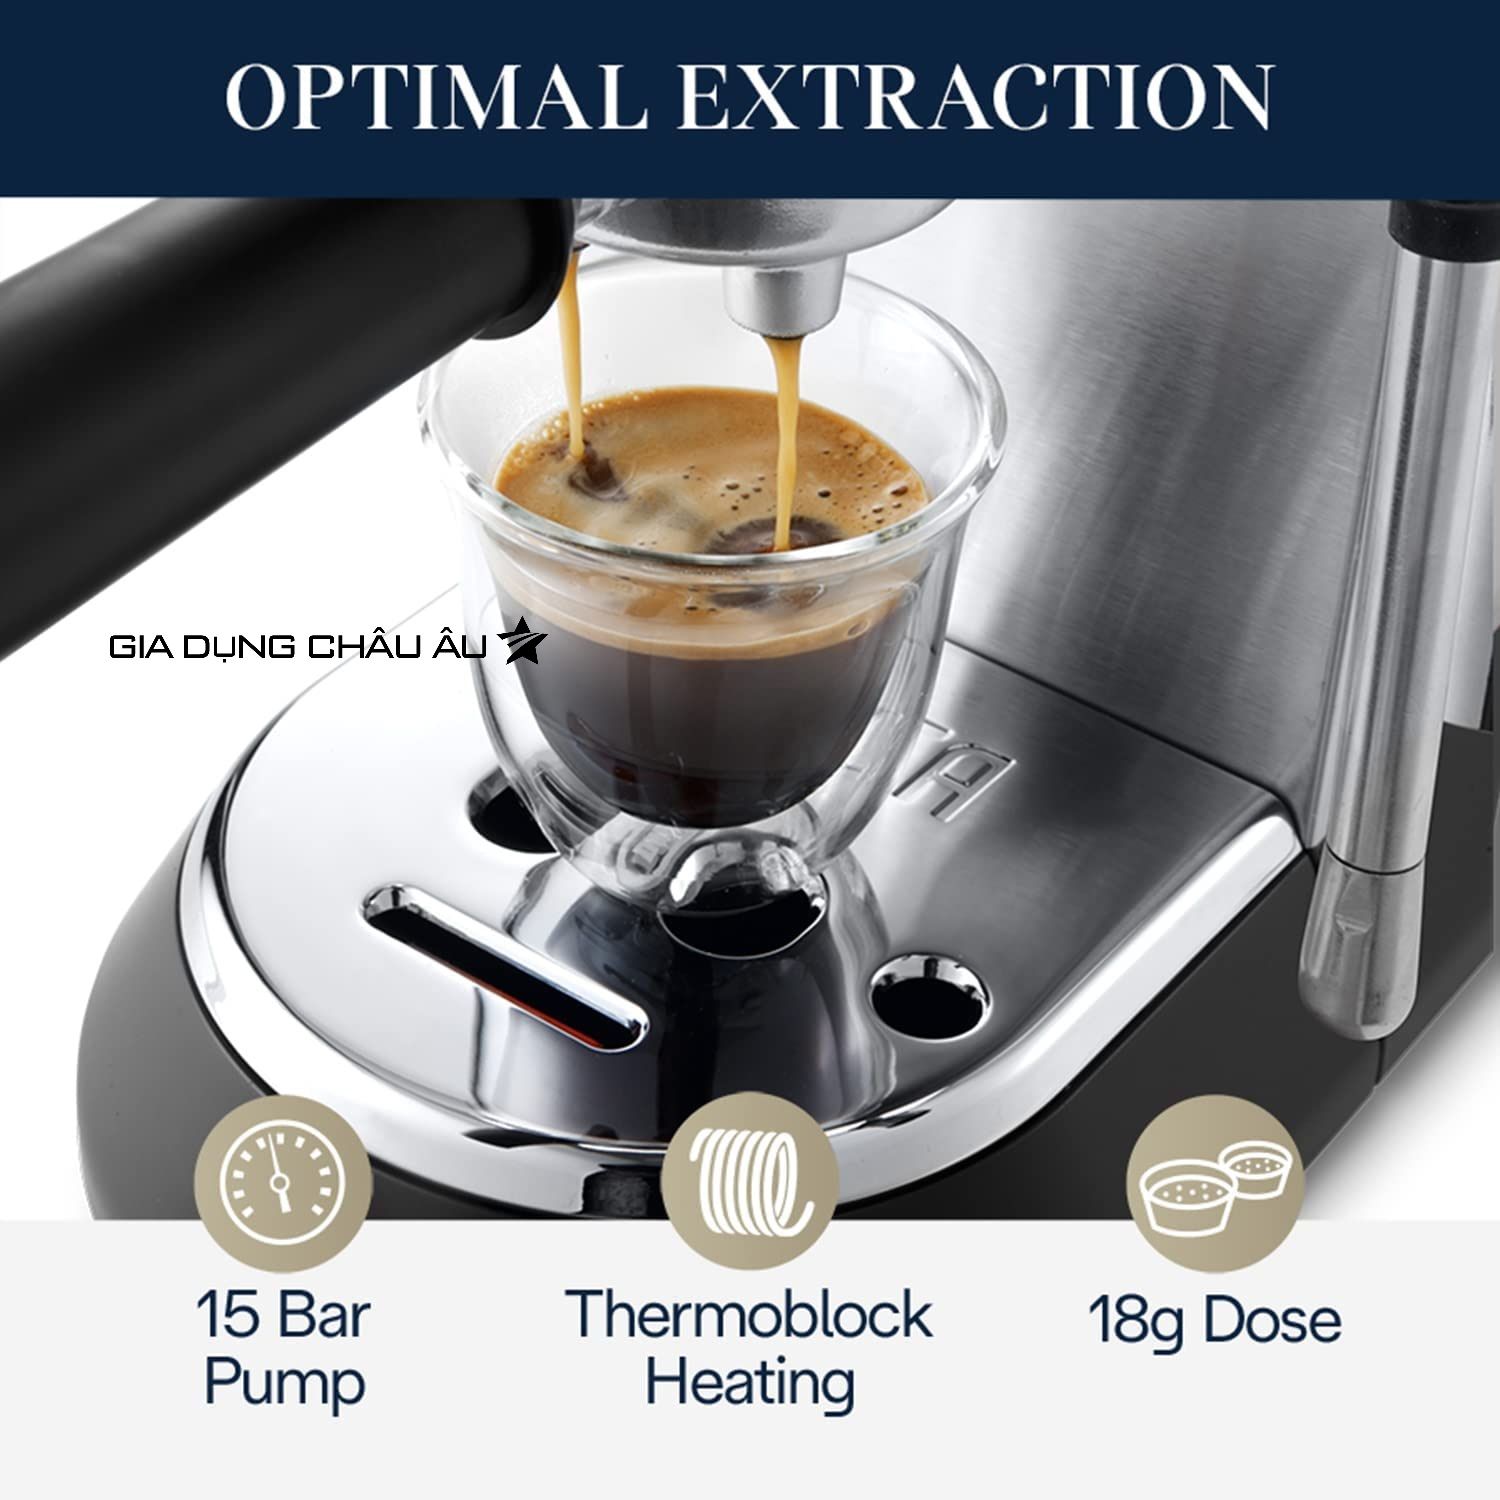  [CHÍNH HÃNG] Máy pha cà phê Delonghi EC885 Dedica Arte Manual Espresso Coffee Maker Ec885.BG - EC885.GY - Ec885.M 